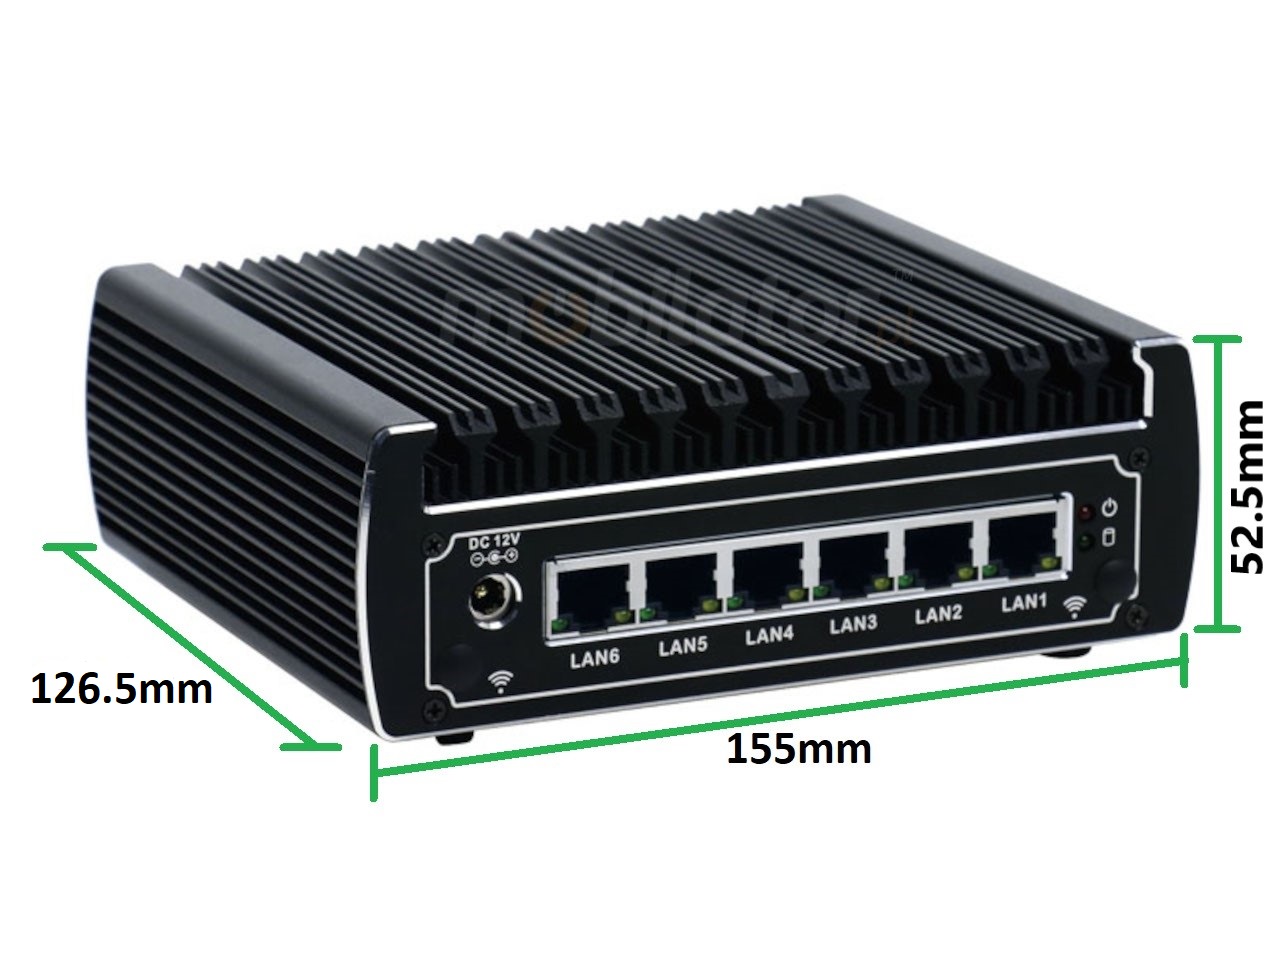   IBOX N133 v.15, wymiary SSD DDR4 WIFI BLUETOOTH, przemysłowy, mały, szybki, niezawodny, fanless, industrial, small, LAN, INTEL i3